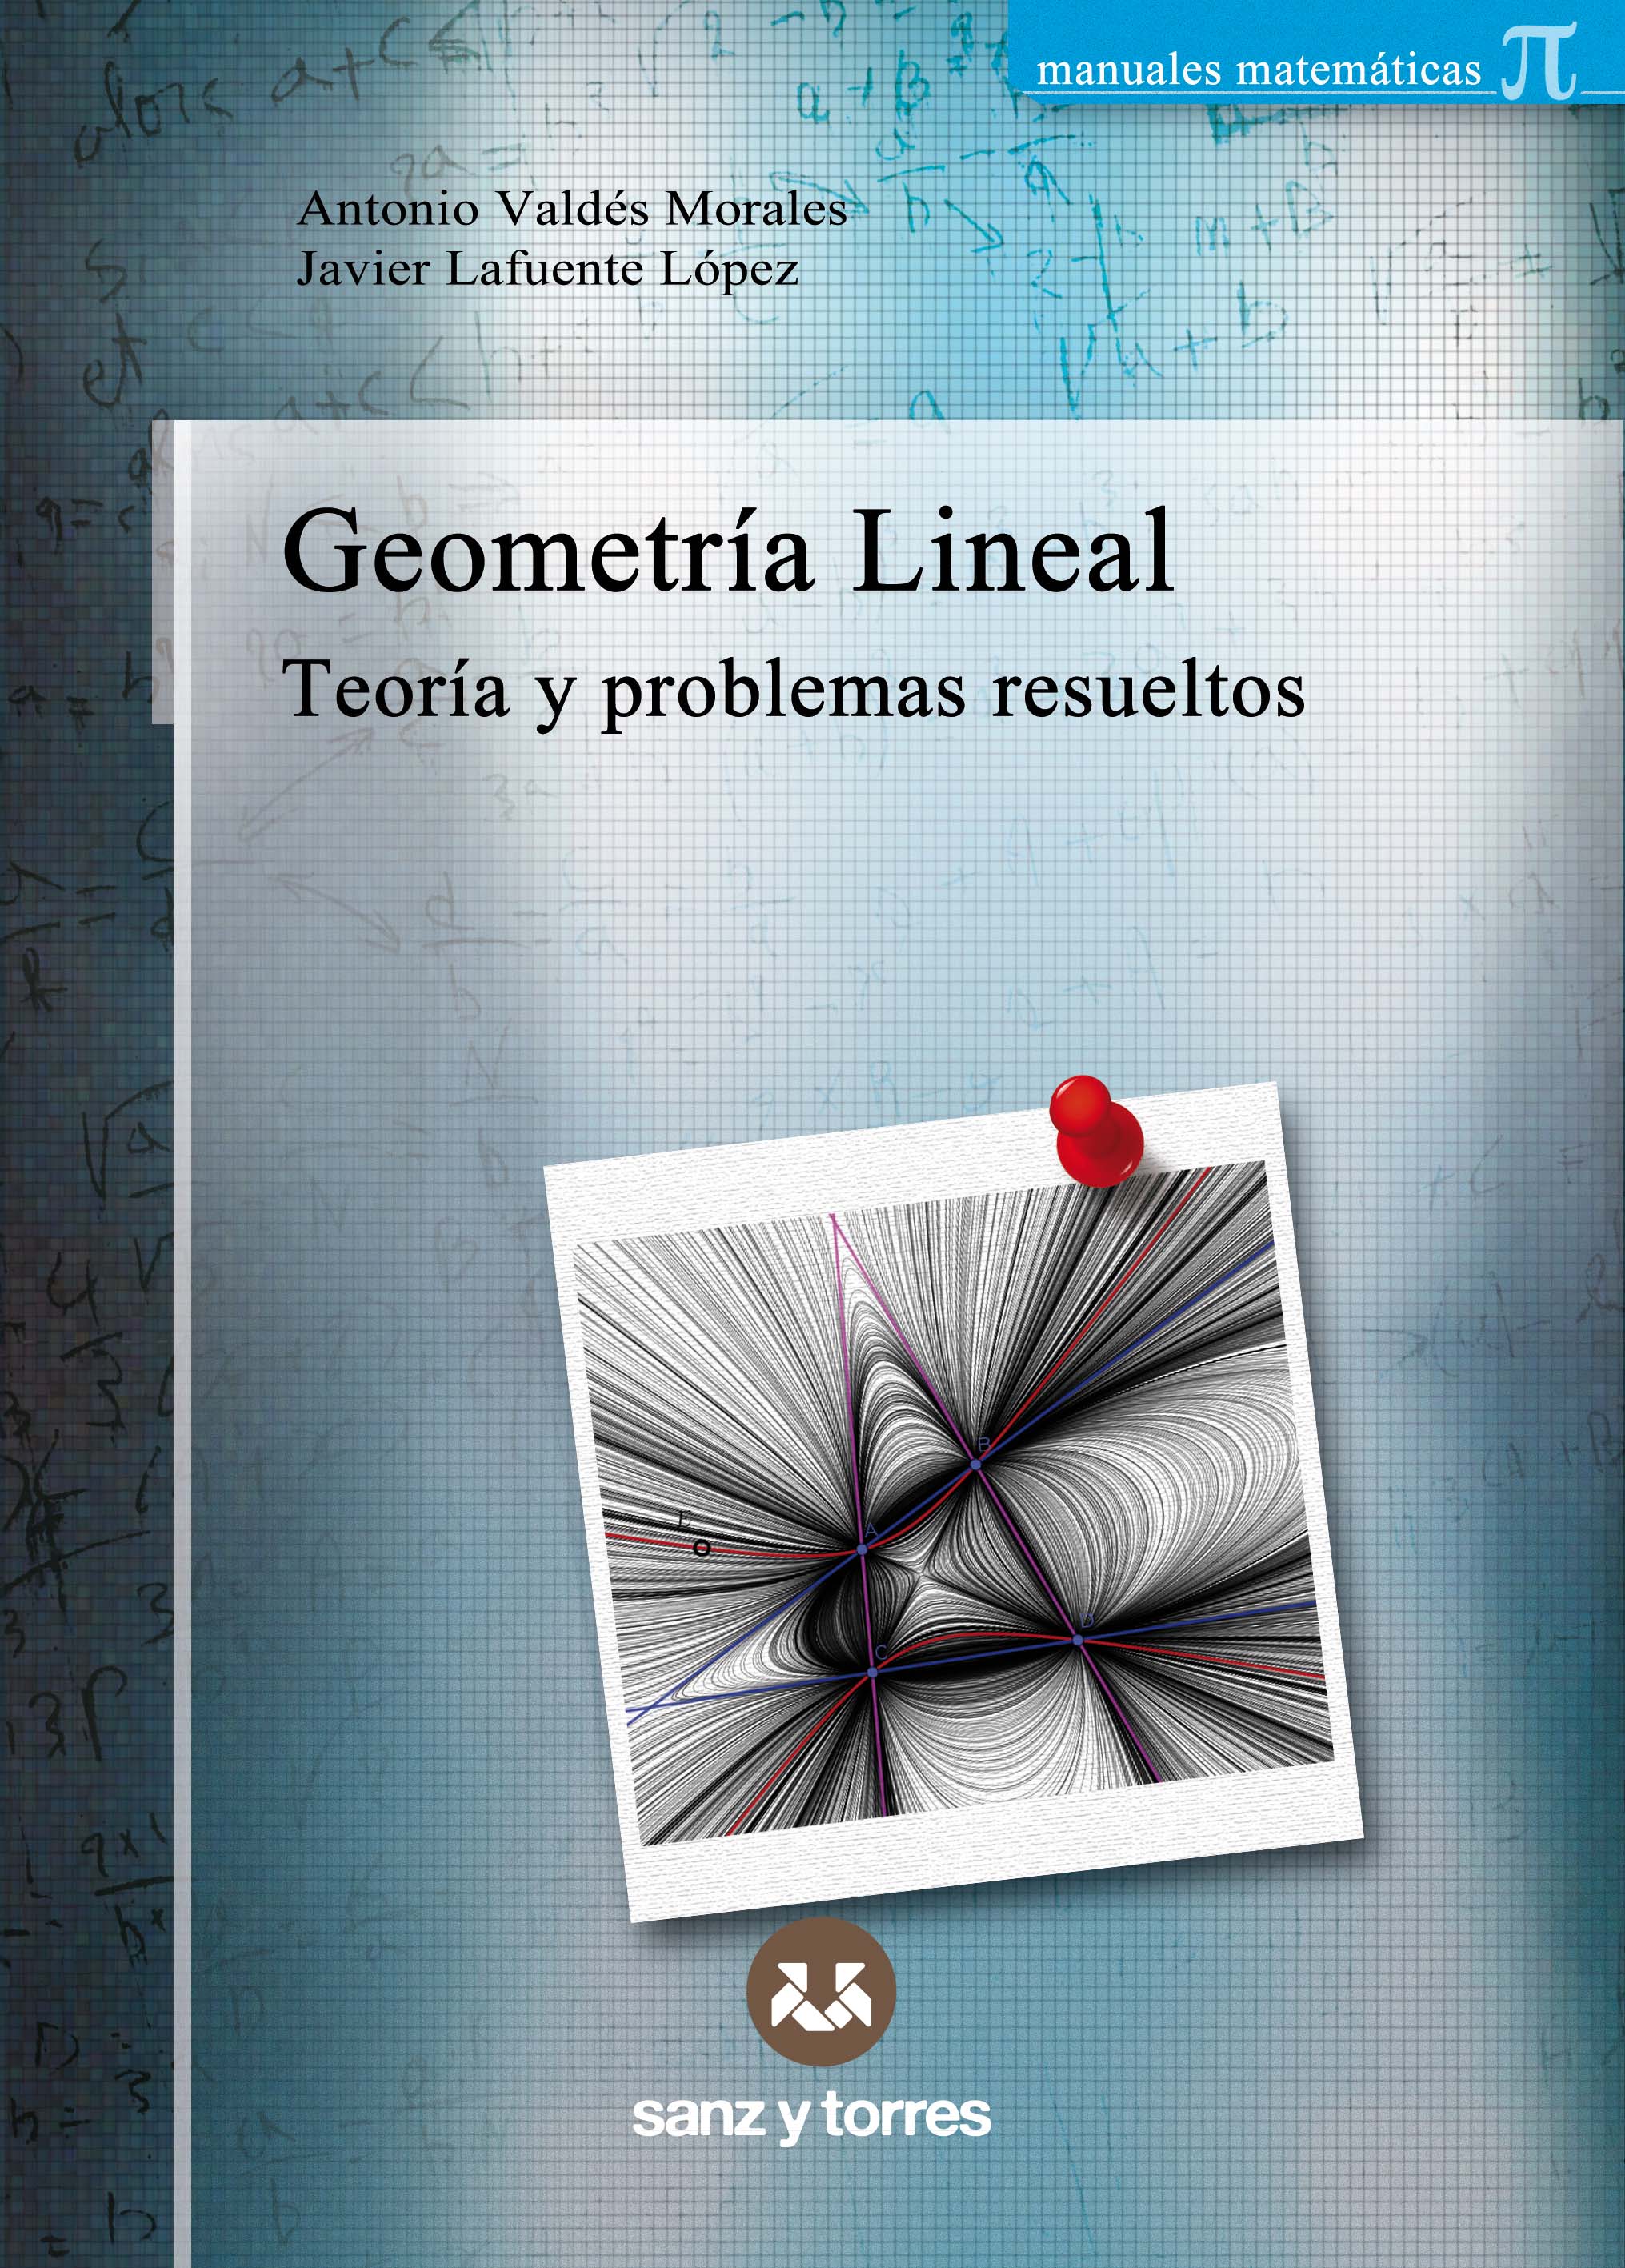 Geometría Lineal
Teoría y problemas resueltos